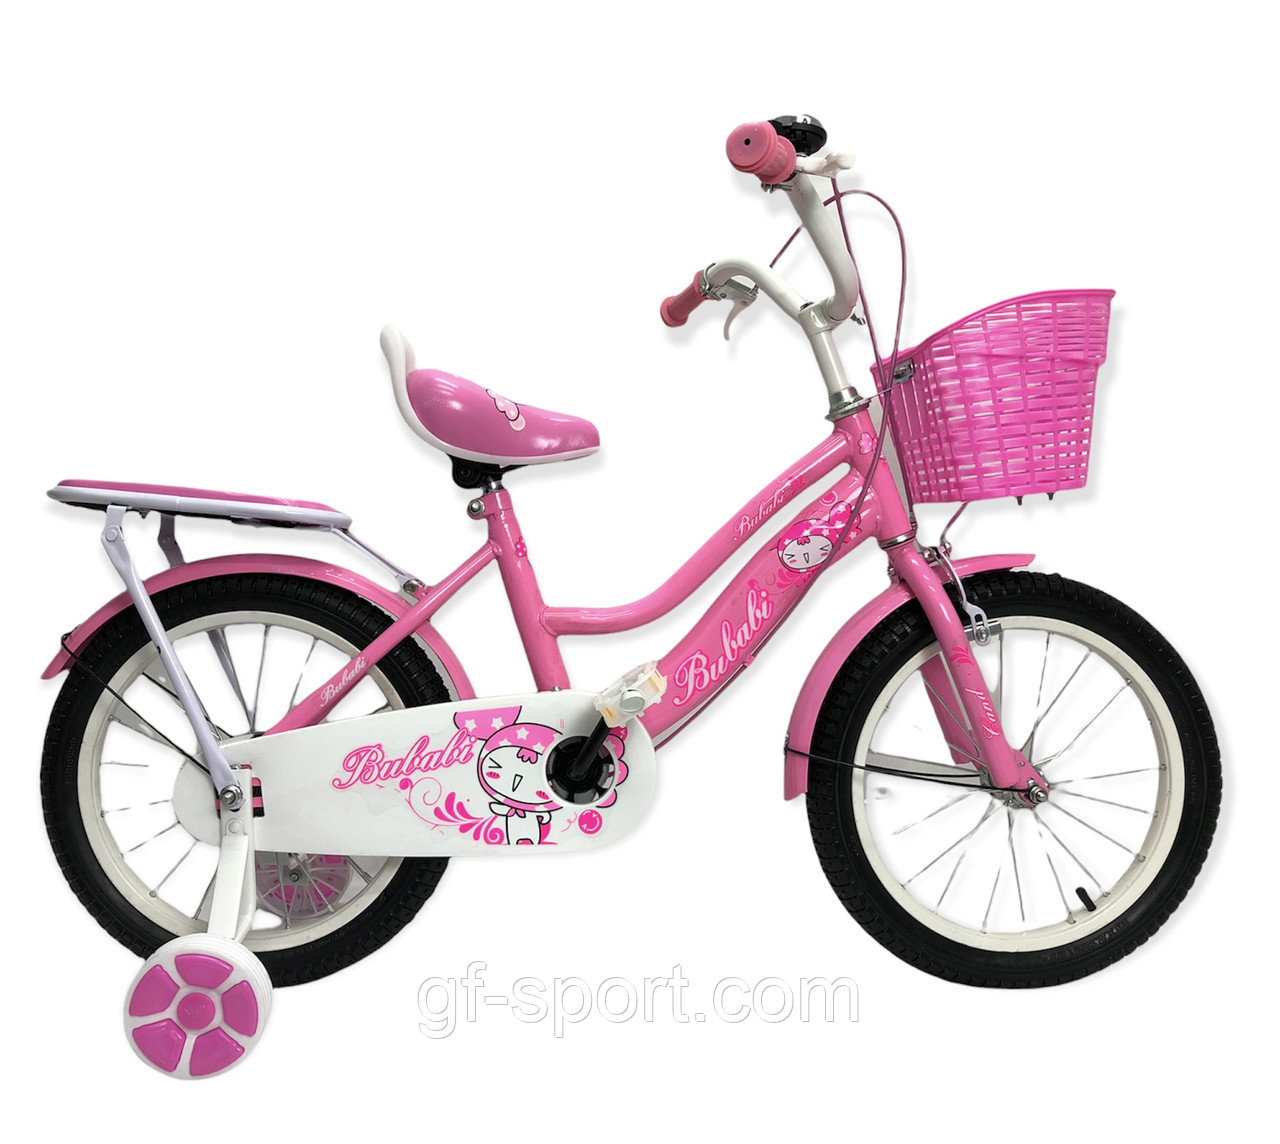 Велосипед Bubabi Baby розовый оригинал детский с холостым ходом 16 размер (501-16)